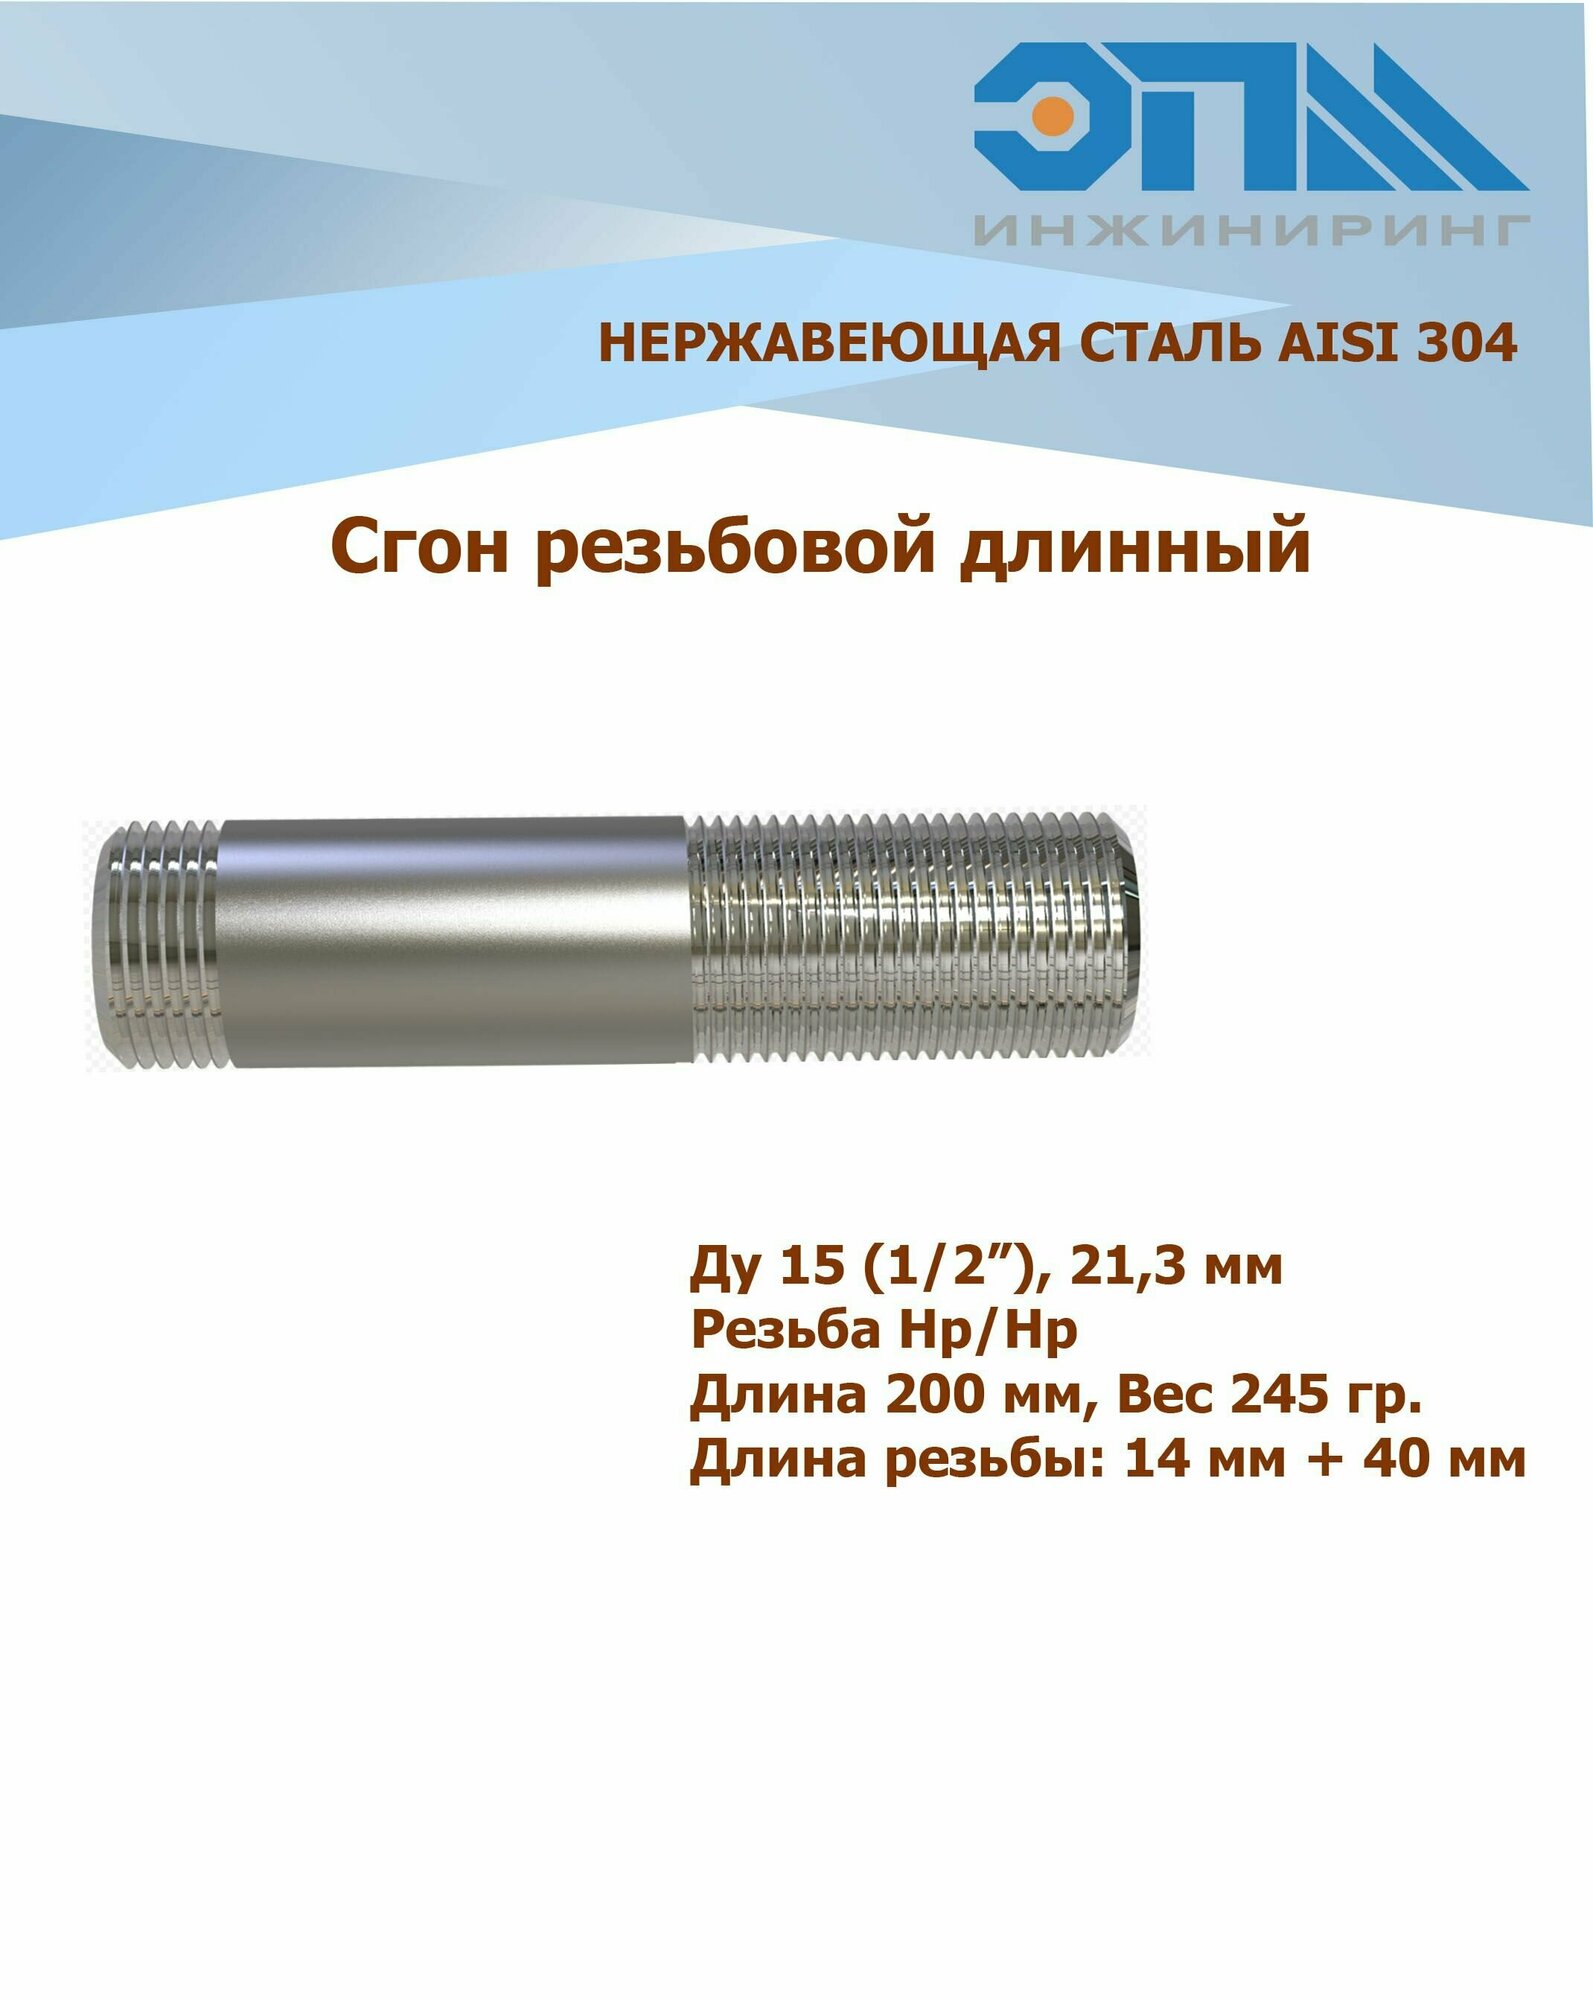 Сгон нержавеющий Ду 15 (1/2') AISI304 длинный (200 мм)